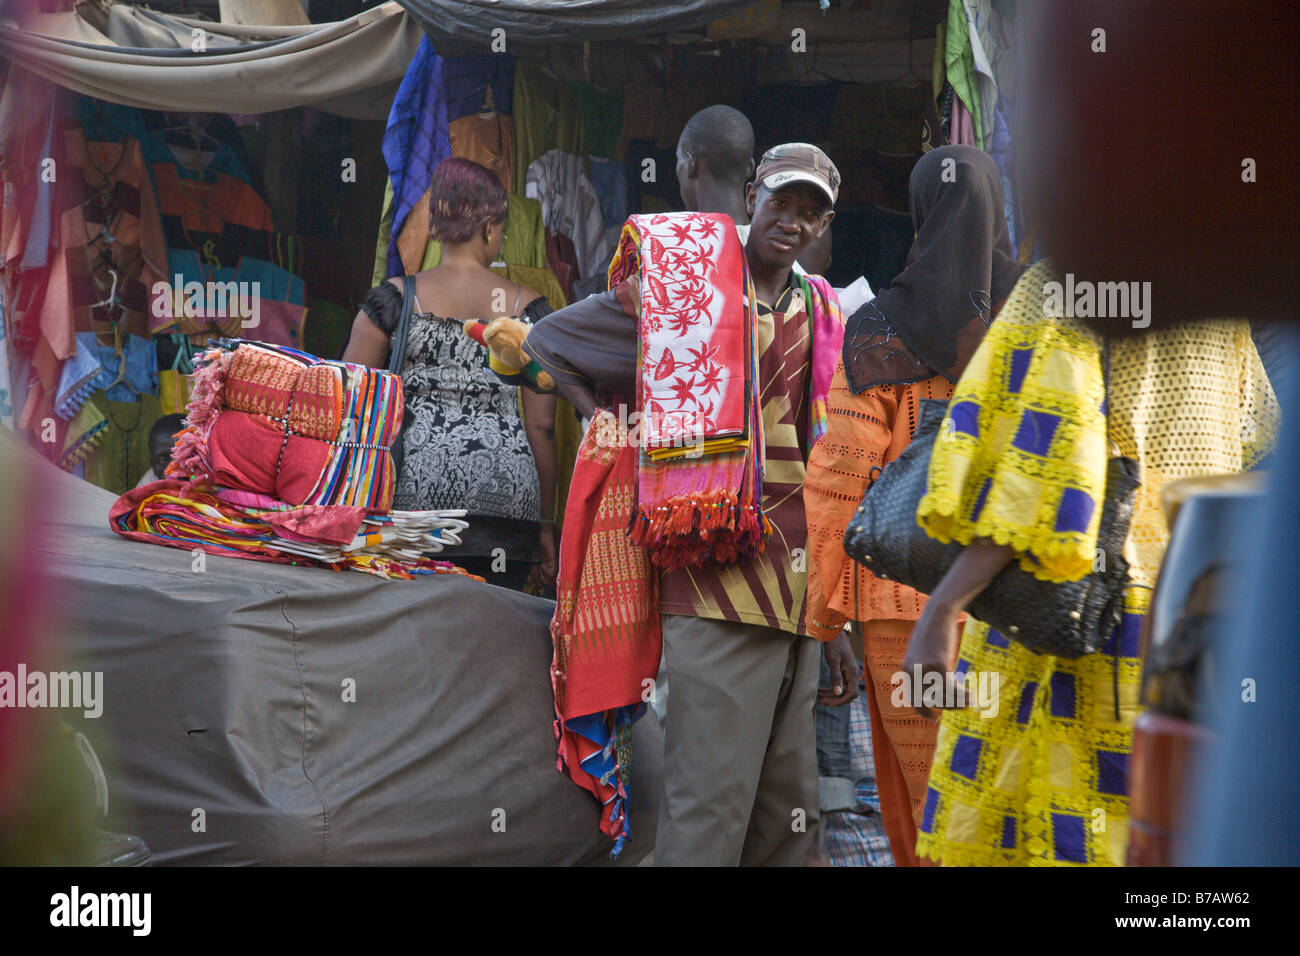 Le marché HLM de Dakar, Sénégal vend toutes sortes de tissus colorés. Bon nombre des vendeurs venus de la Guinée. Banque D'Images